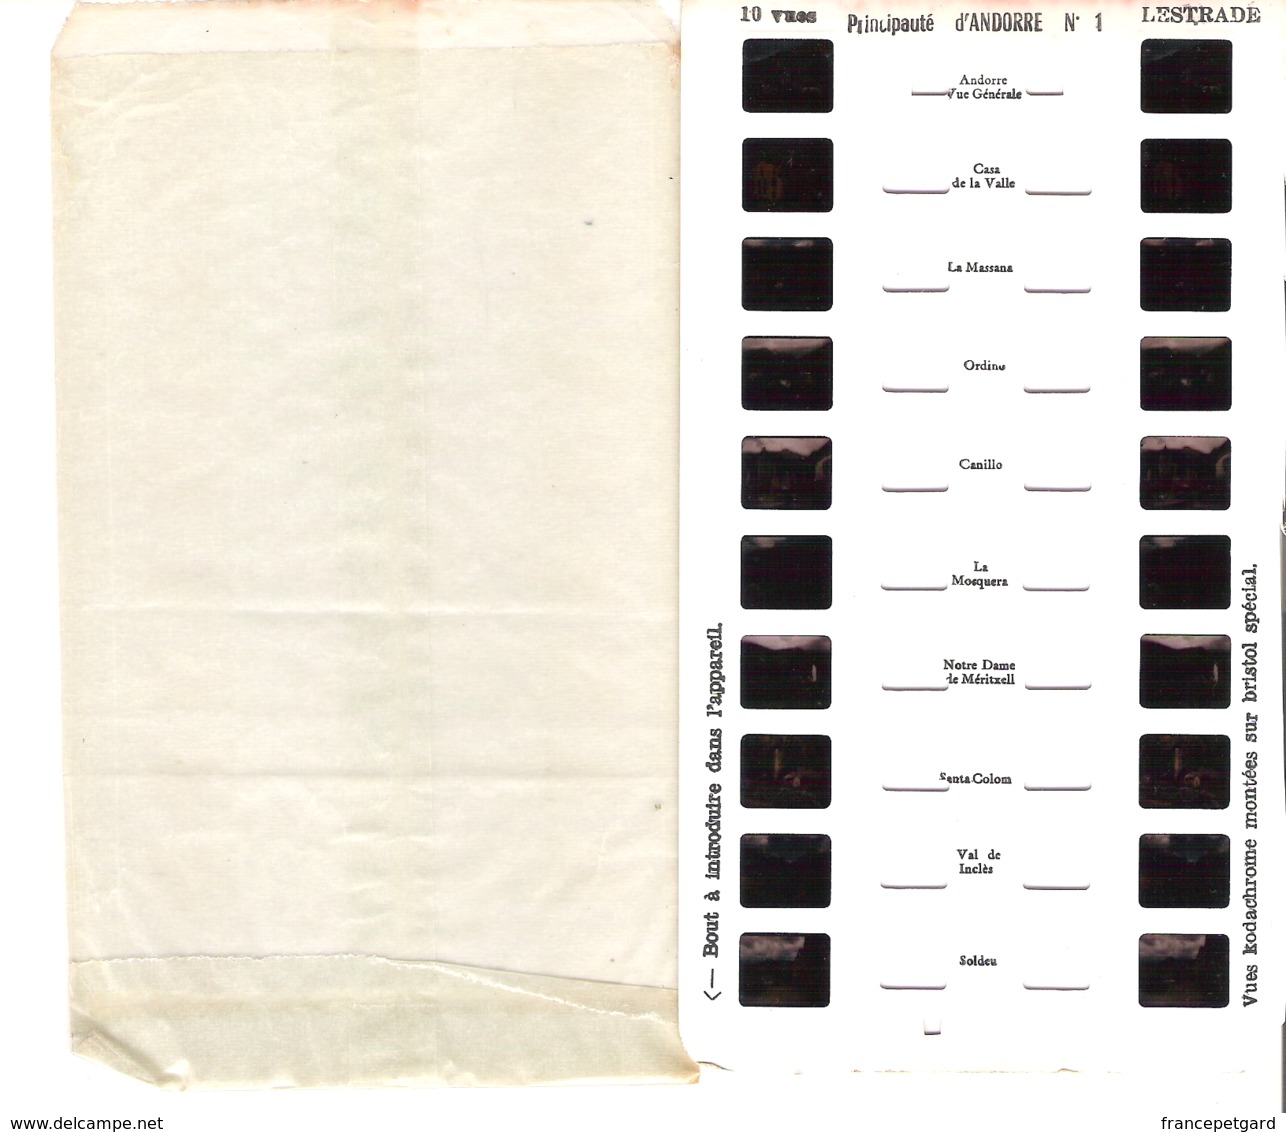 Lestrade   Vues Kodachrome   Principauté D' Andorre N°1 - Stereoscoopen